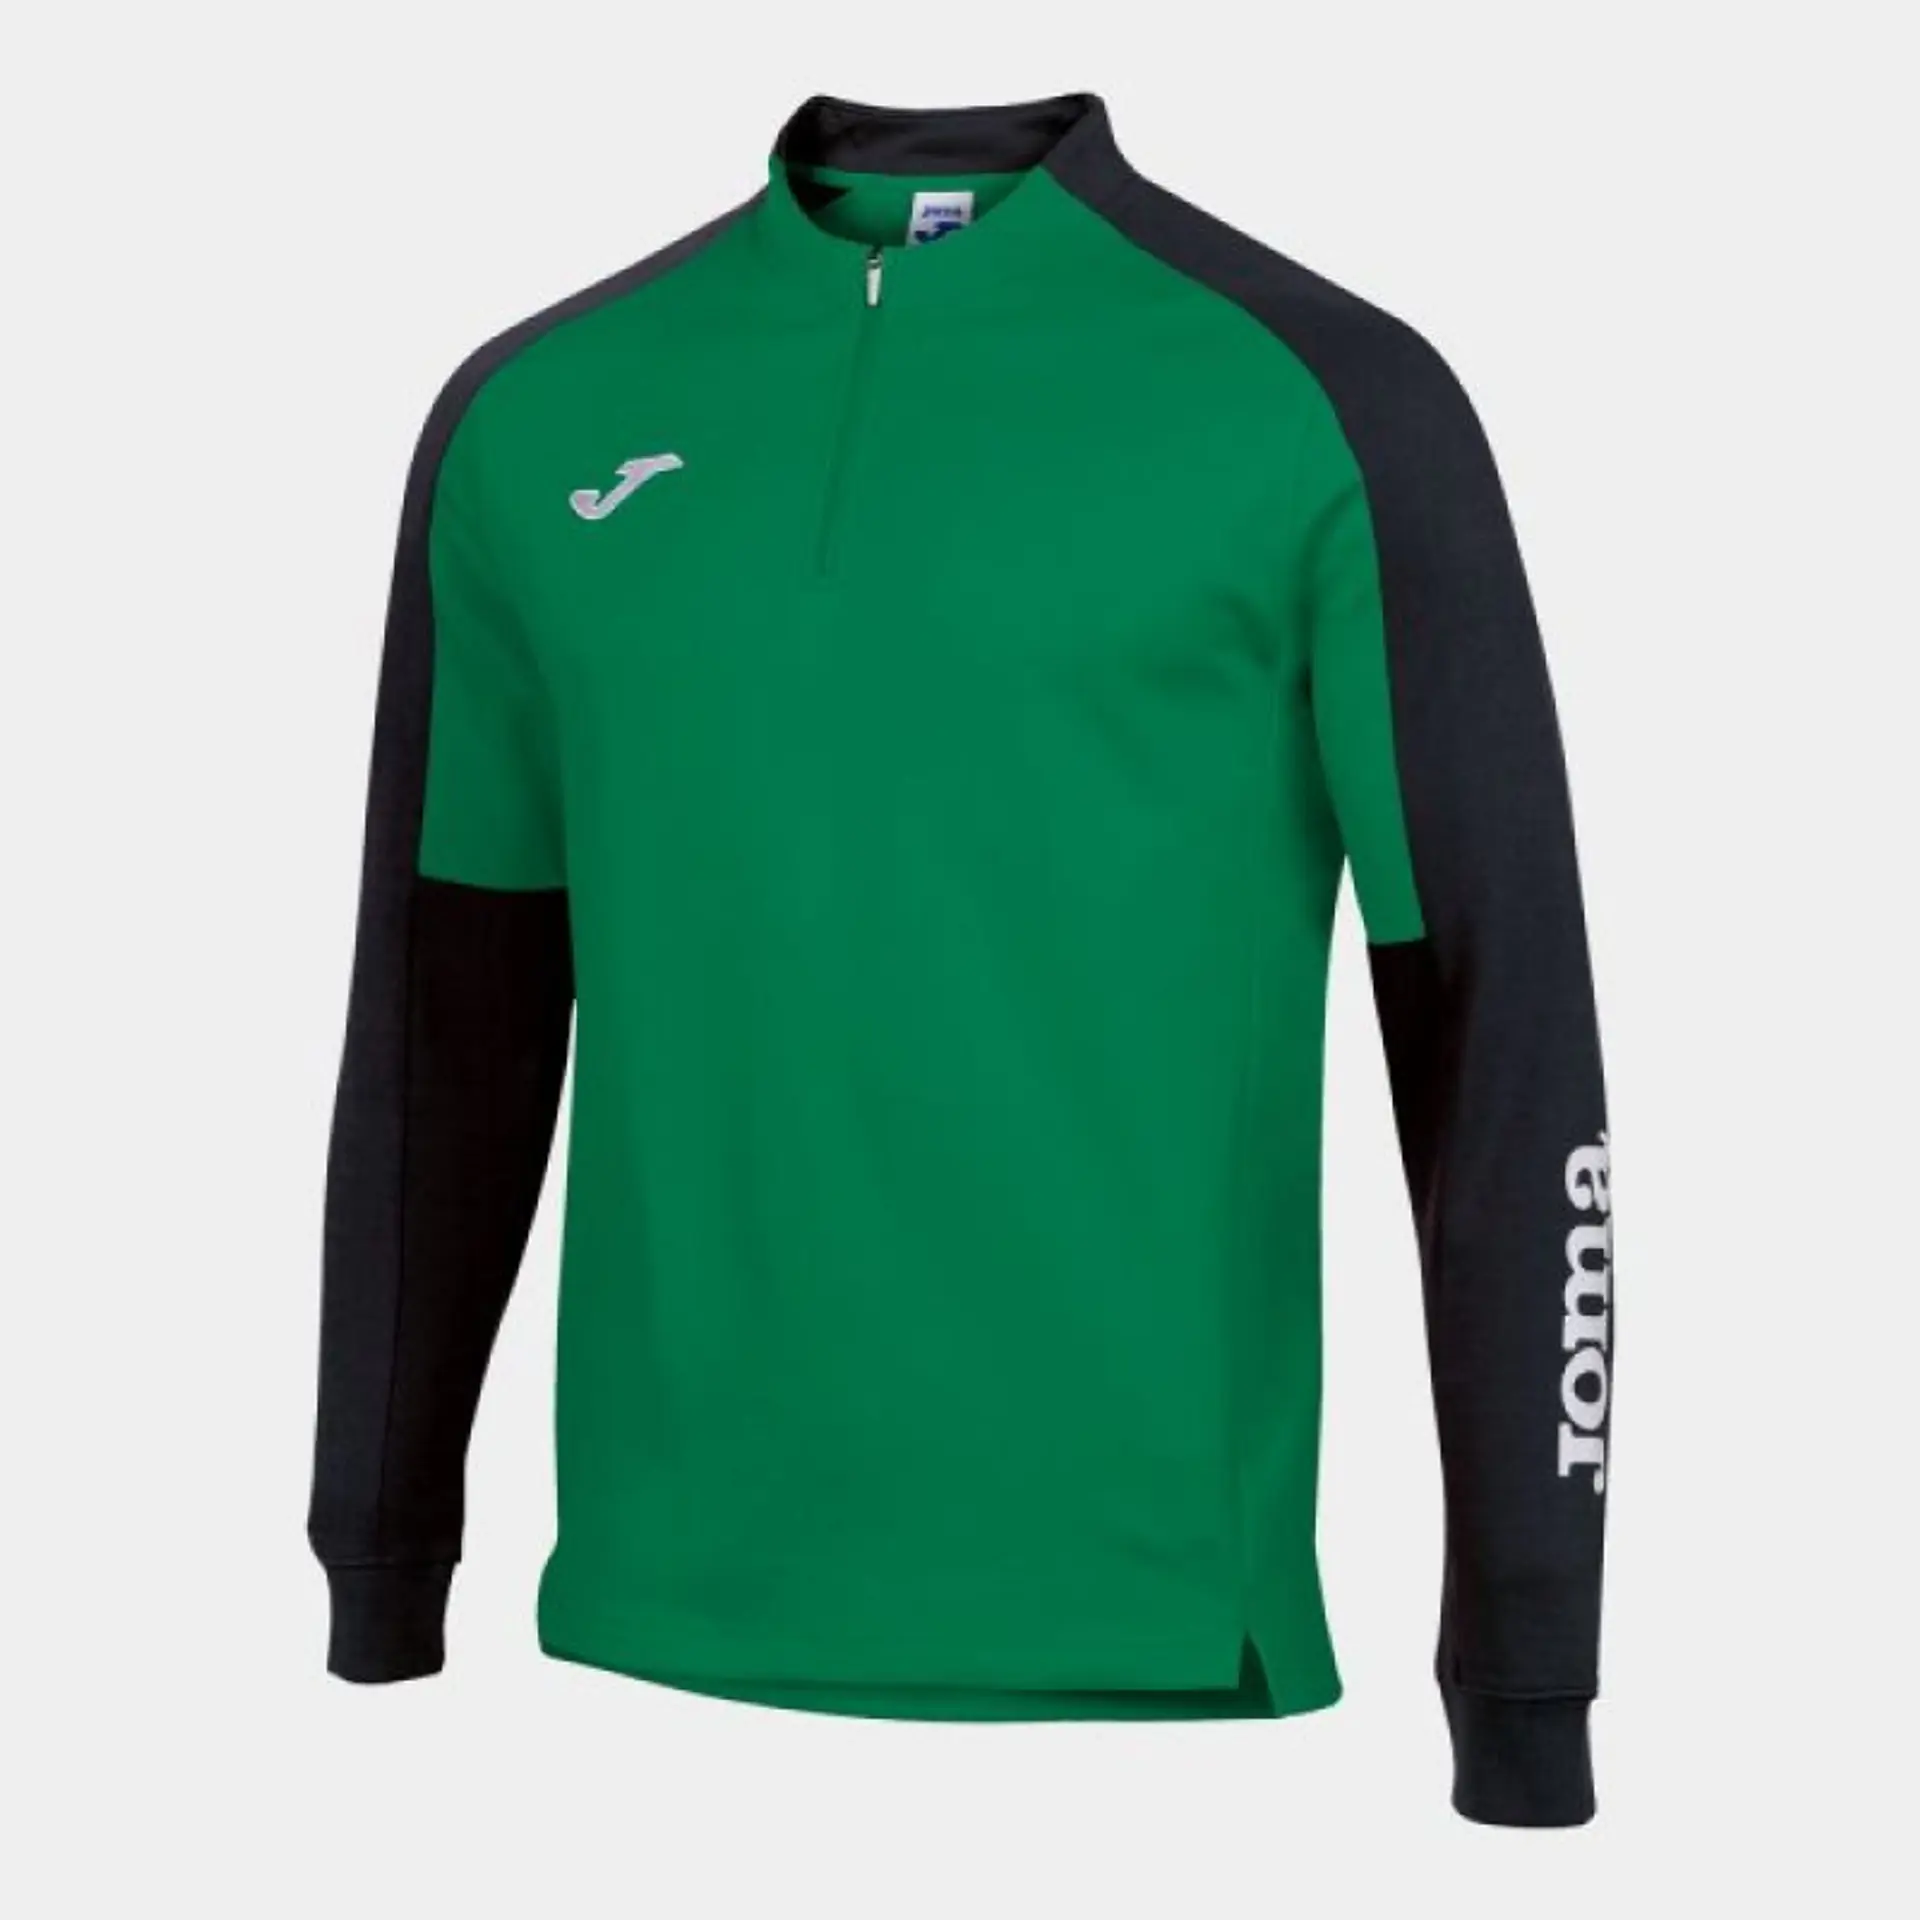 

Bluza Joma Eco Championship Sweatshirt (kolor Czarny. Zielony, rozmiar 6XS)